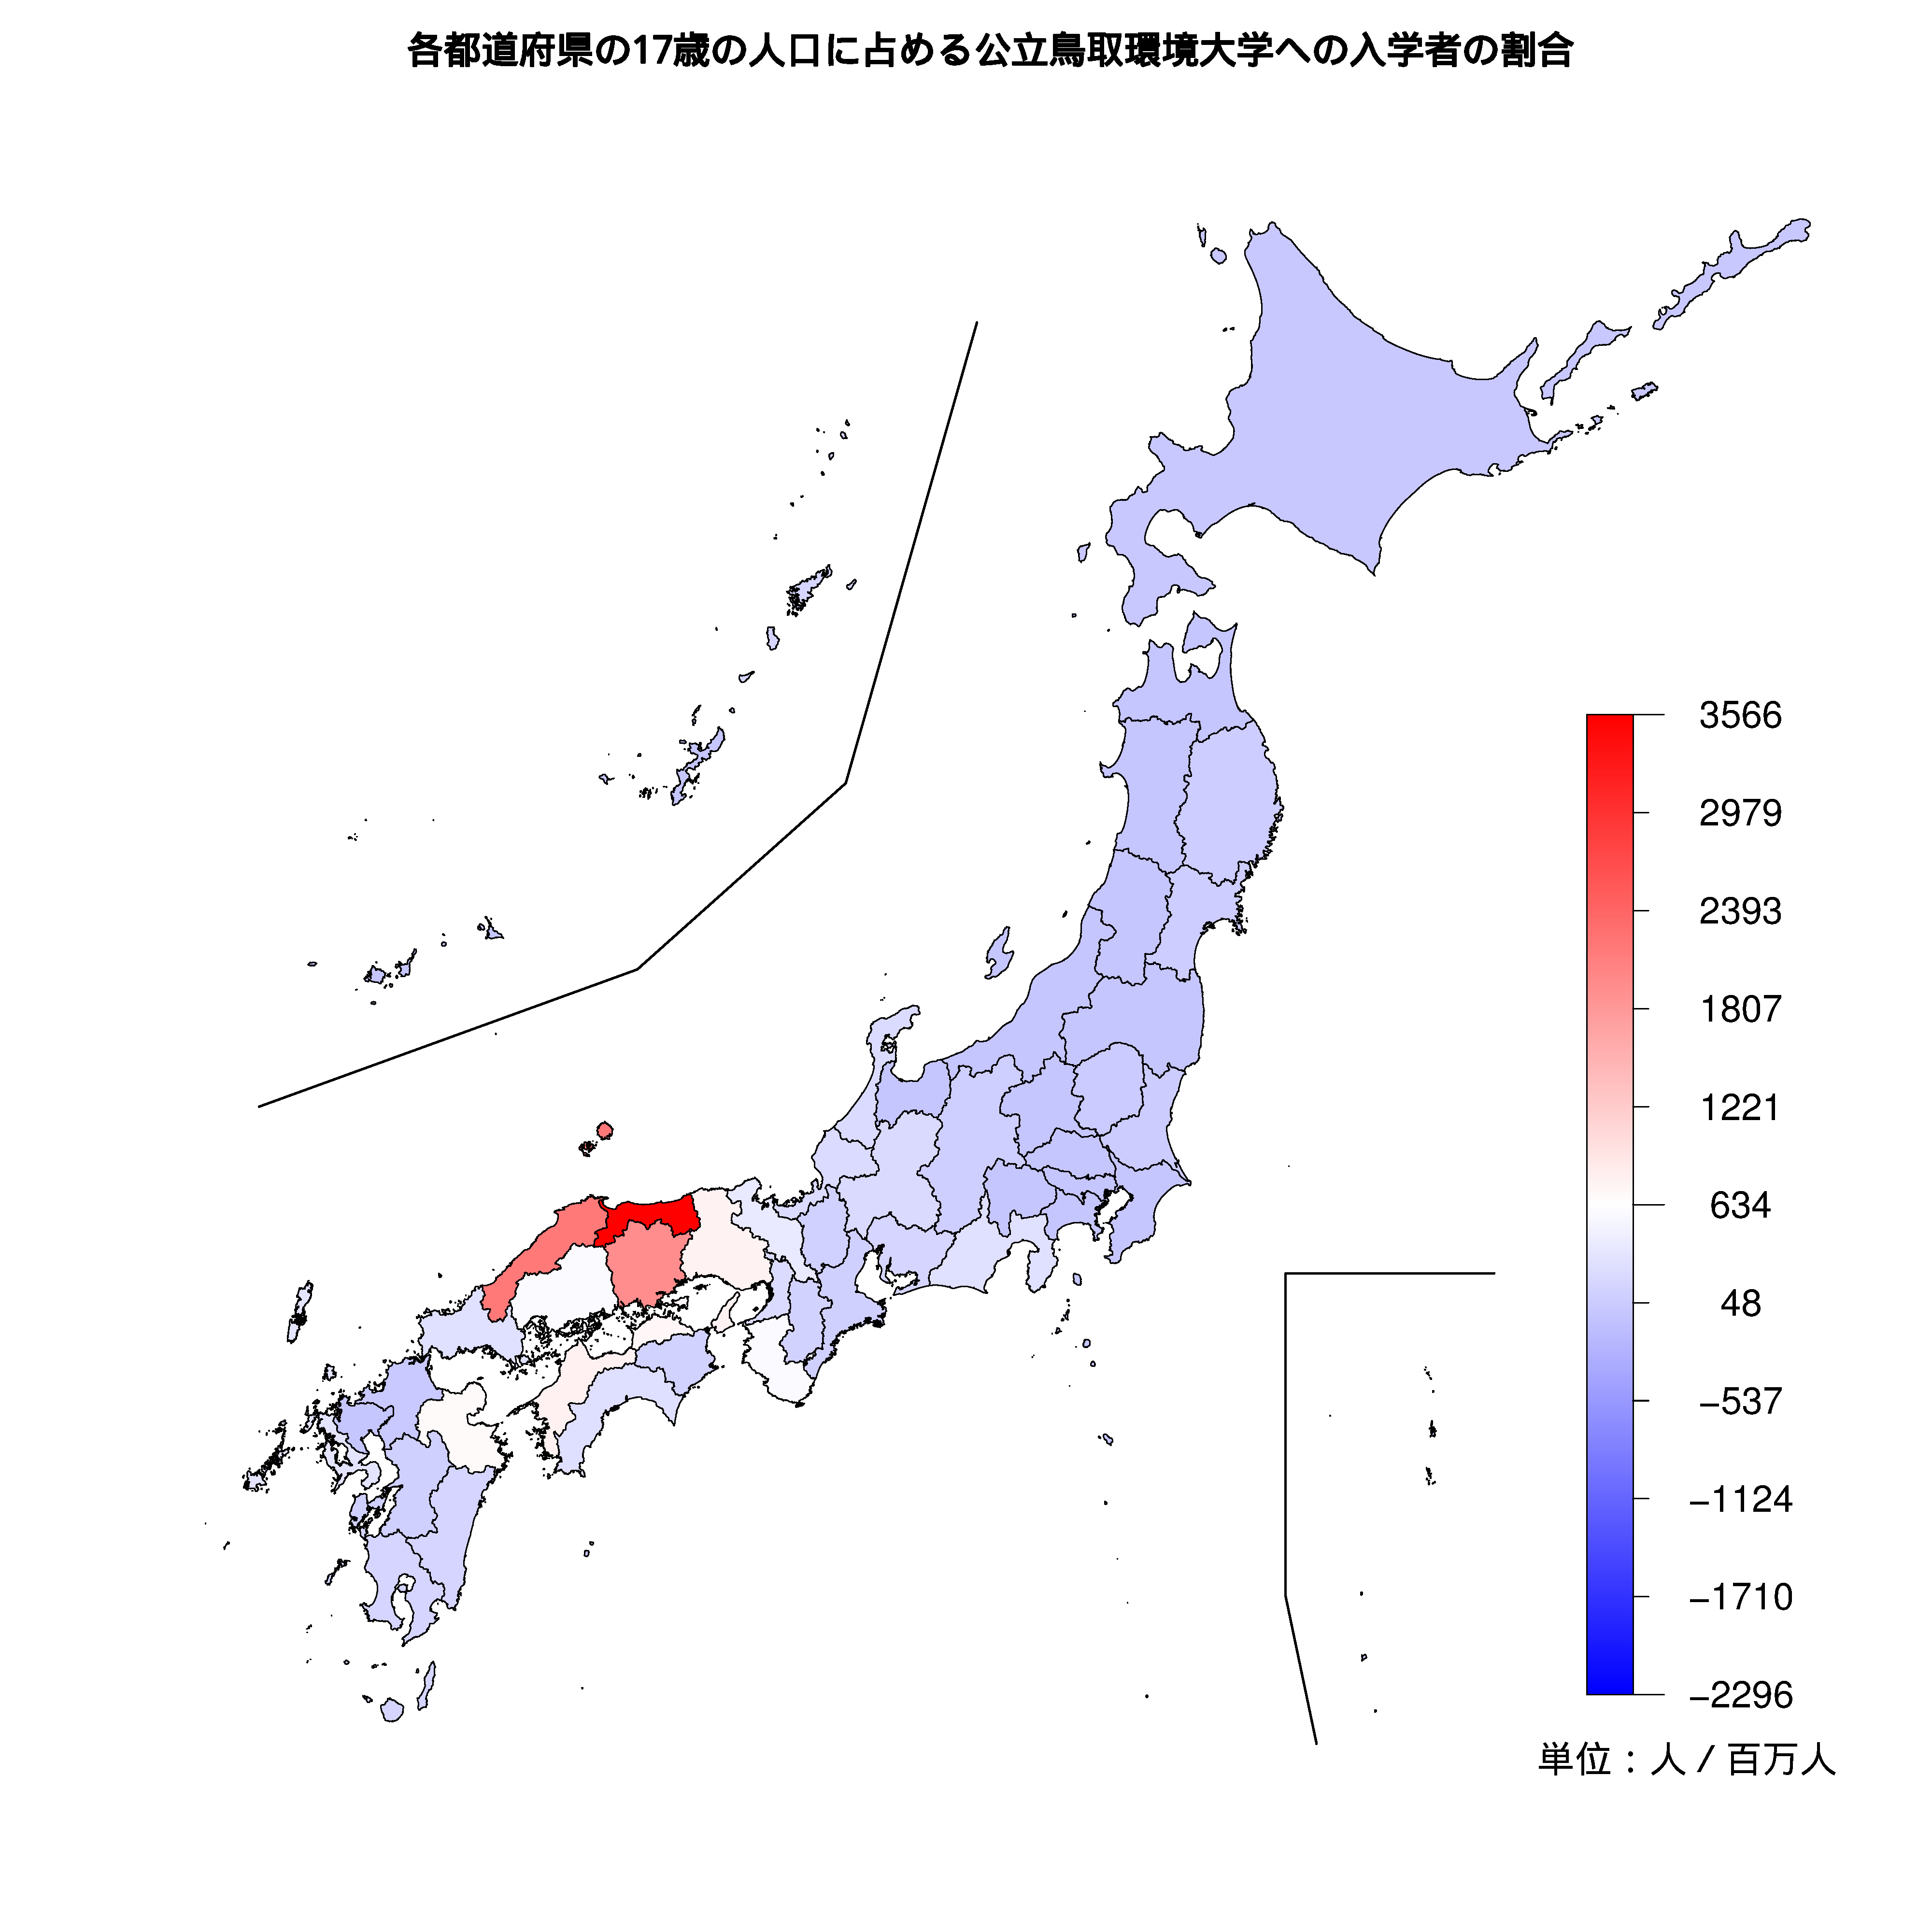 公立鳥取環境大学への入学者が多い都道府県の色分け地図